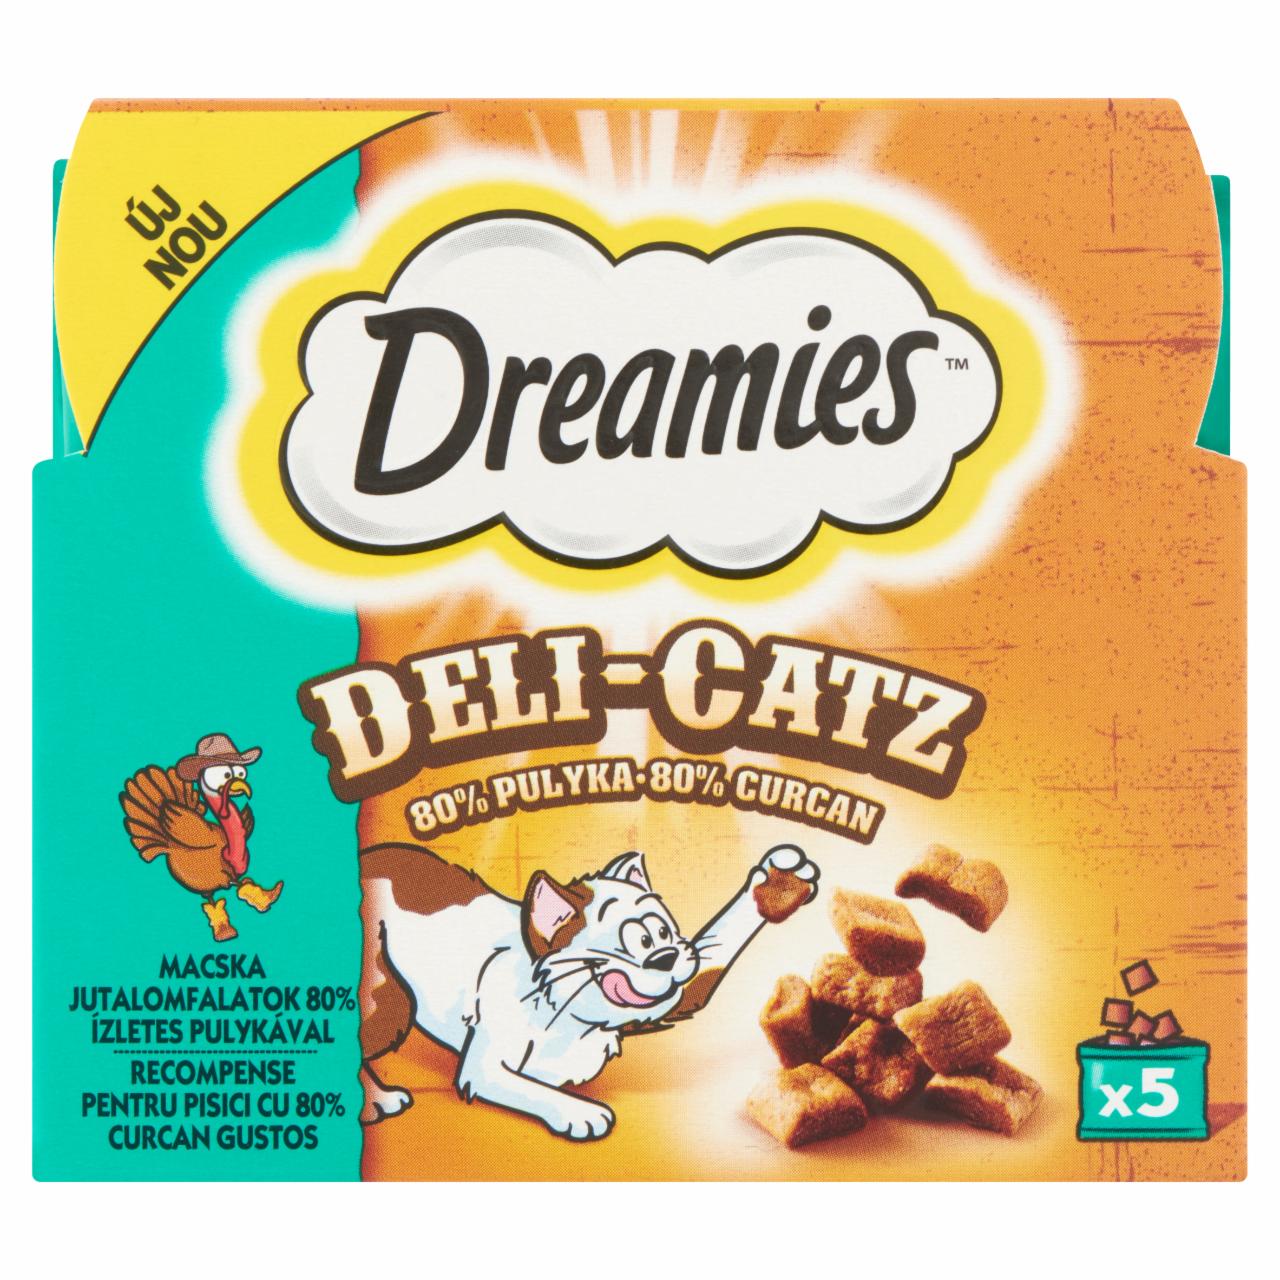 Képek - Dreamies Deli-Catz kiegészítő állateledel felnőtt macskák számára pulykával 5 x 5 g